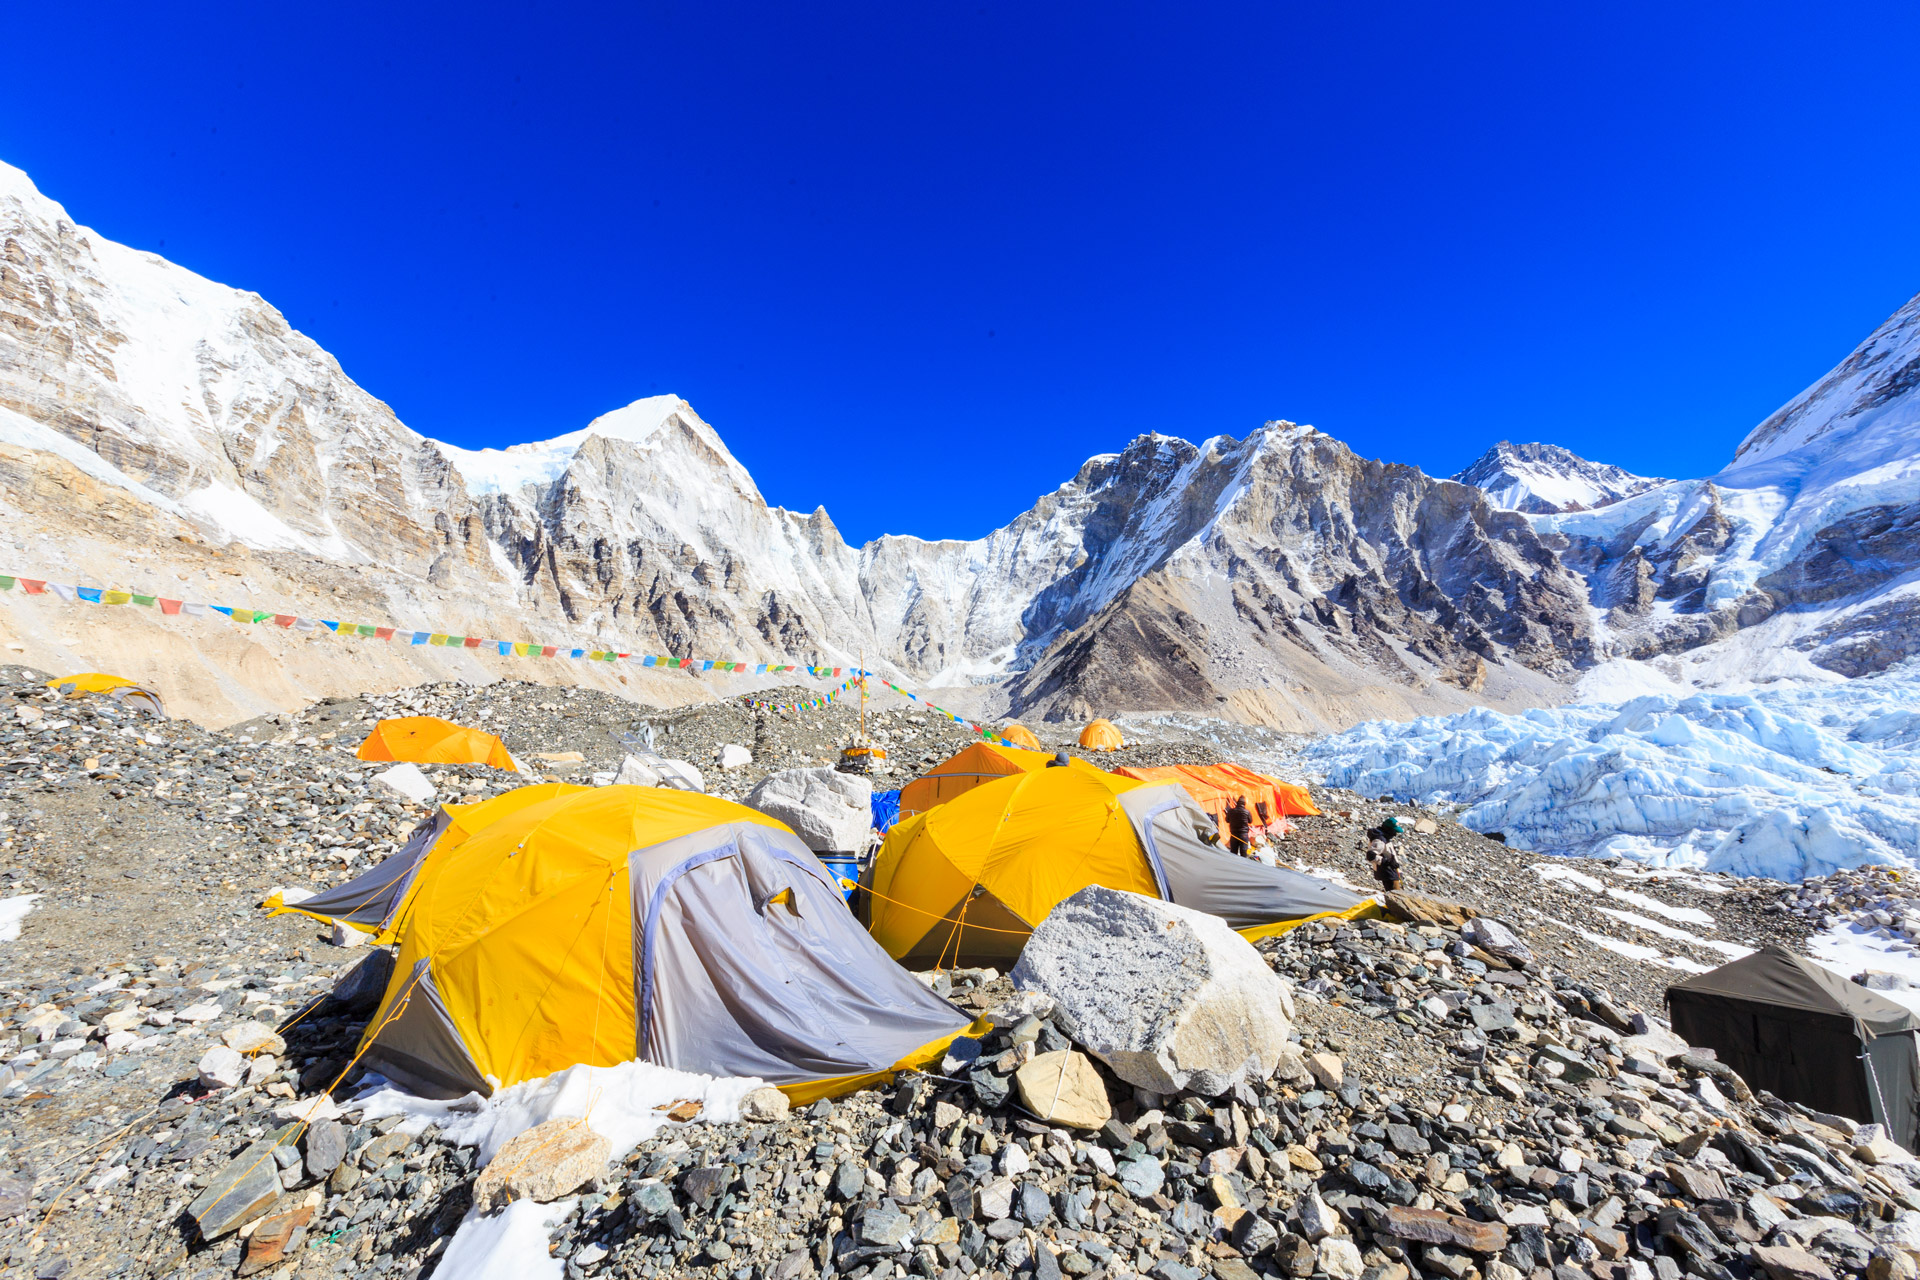 【EBC+岛峰】 尼泊尔 珠穆朗玛峰南坡登山大本营EBC徒步 + 岛峰攀登 19日计划